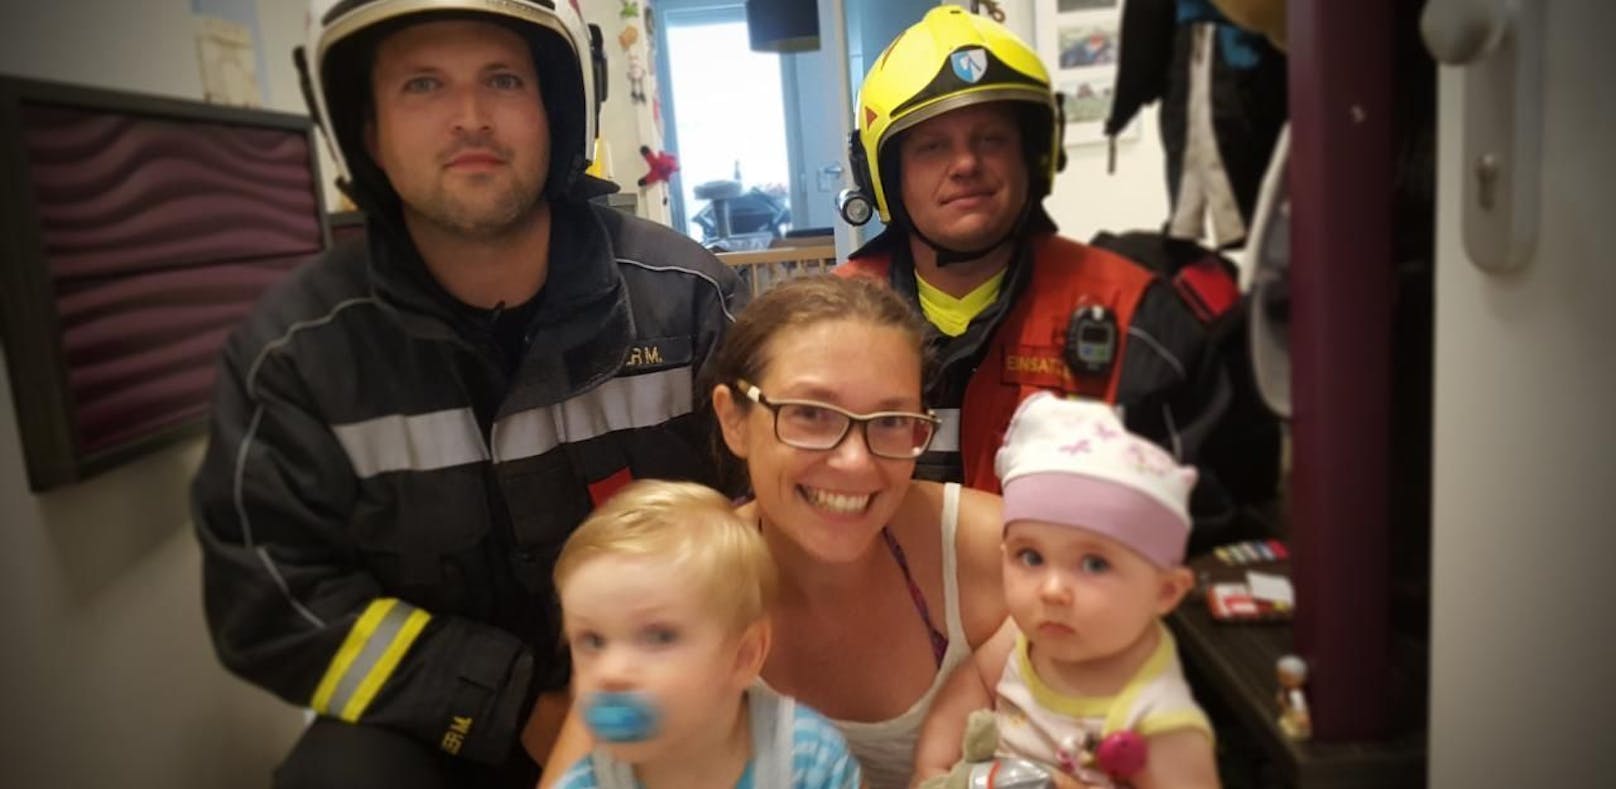 Die Feuerwehr half der jungen Mutter aus der Patsche. Die Aufregung überstanden alle unbeschadet.